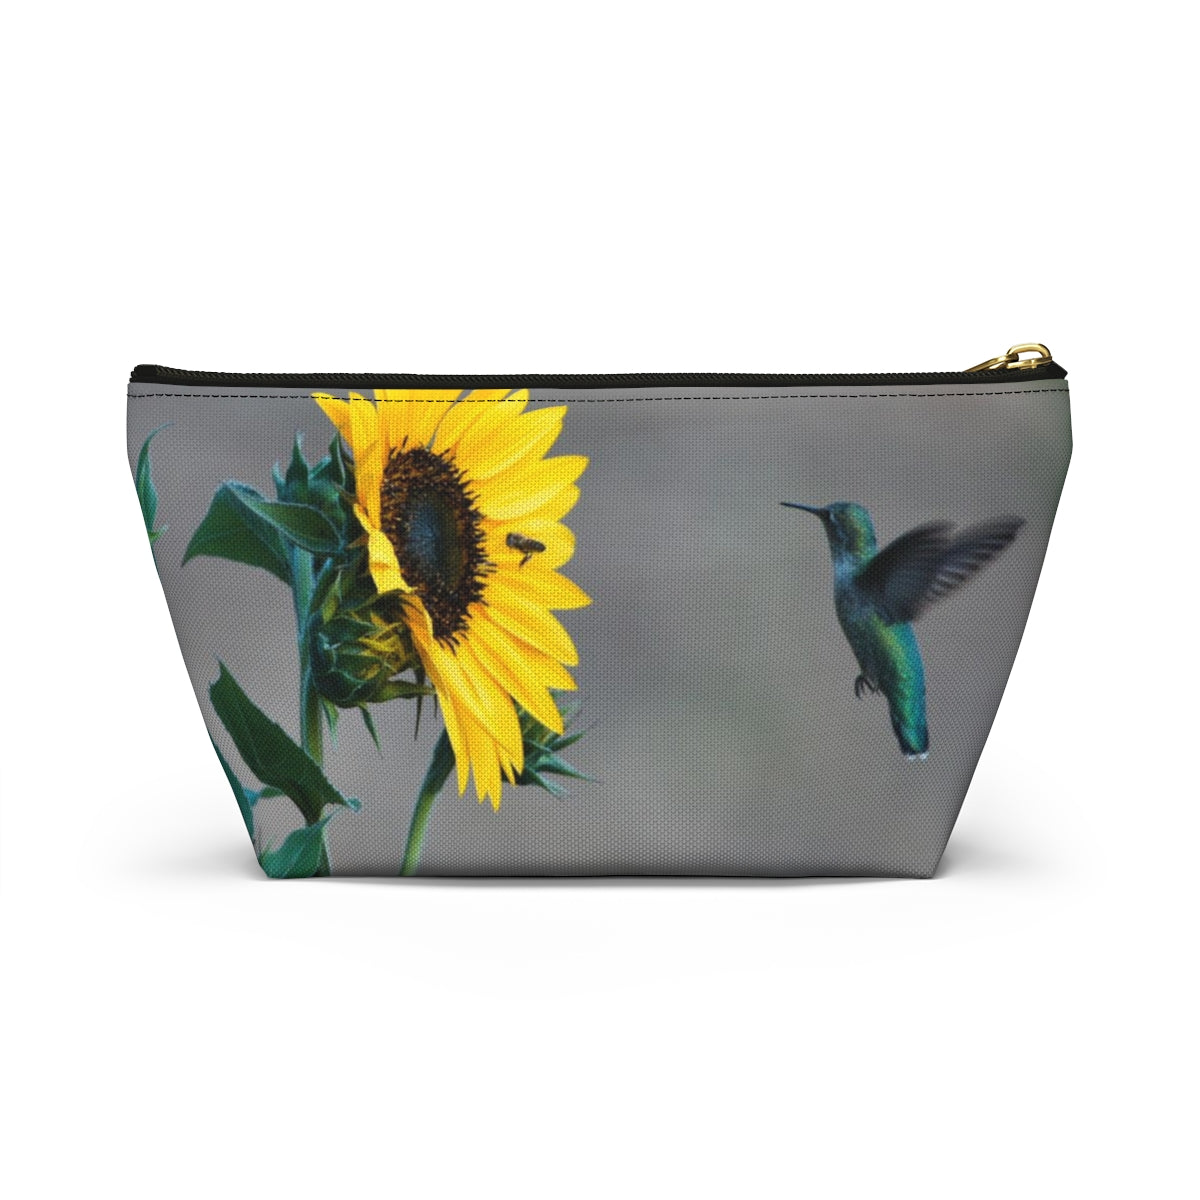 Sunflower Hummingbird pouch